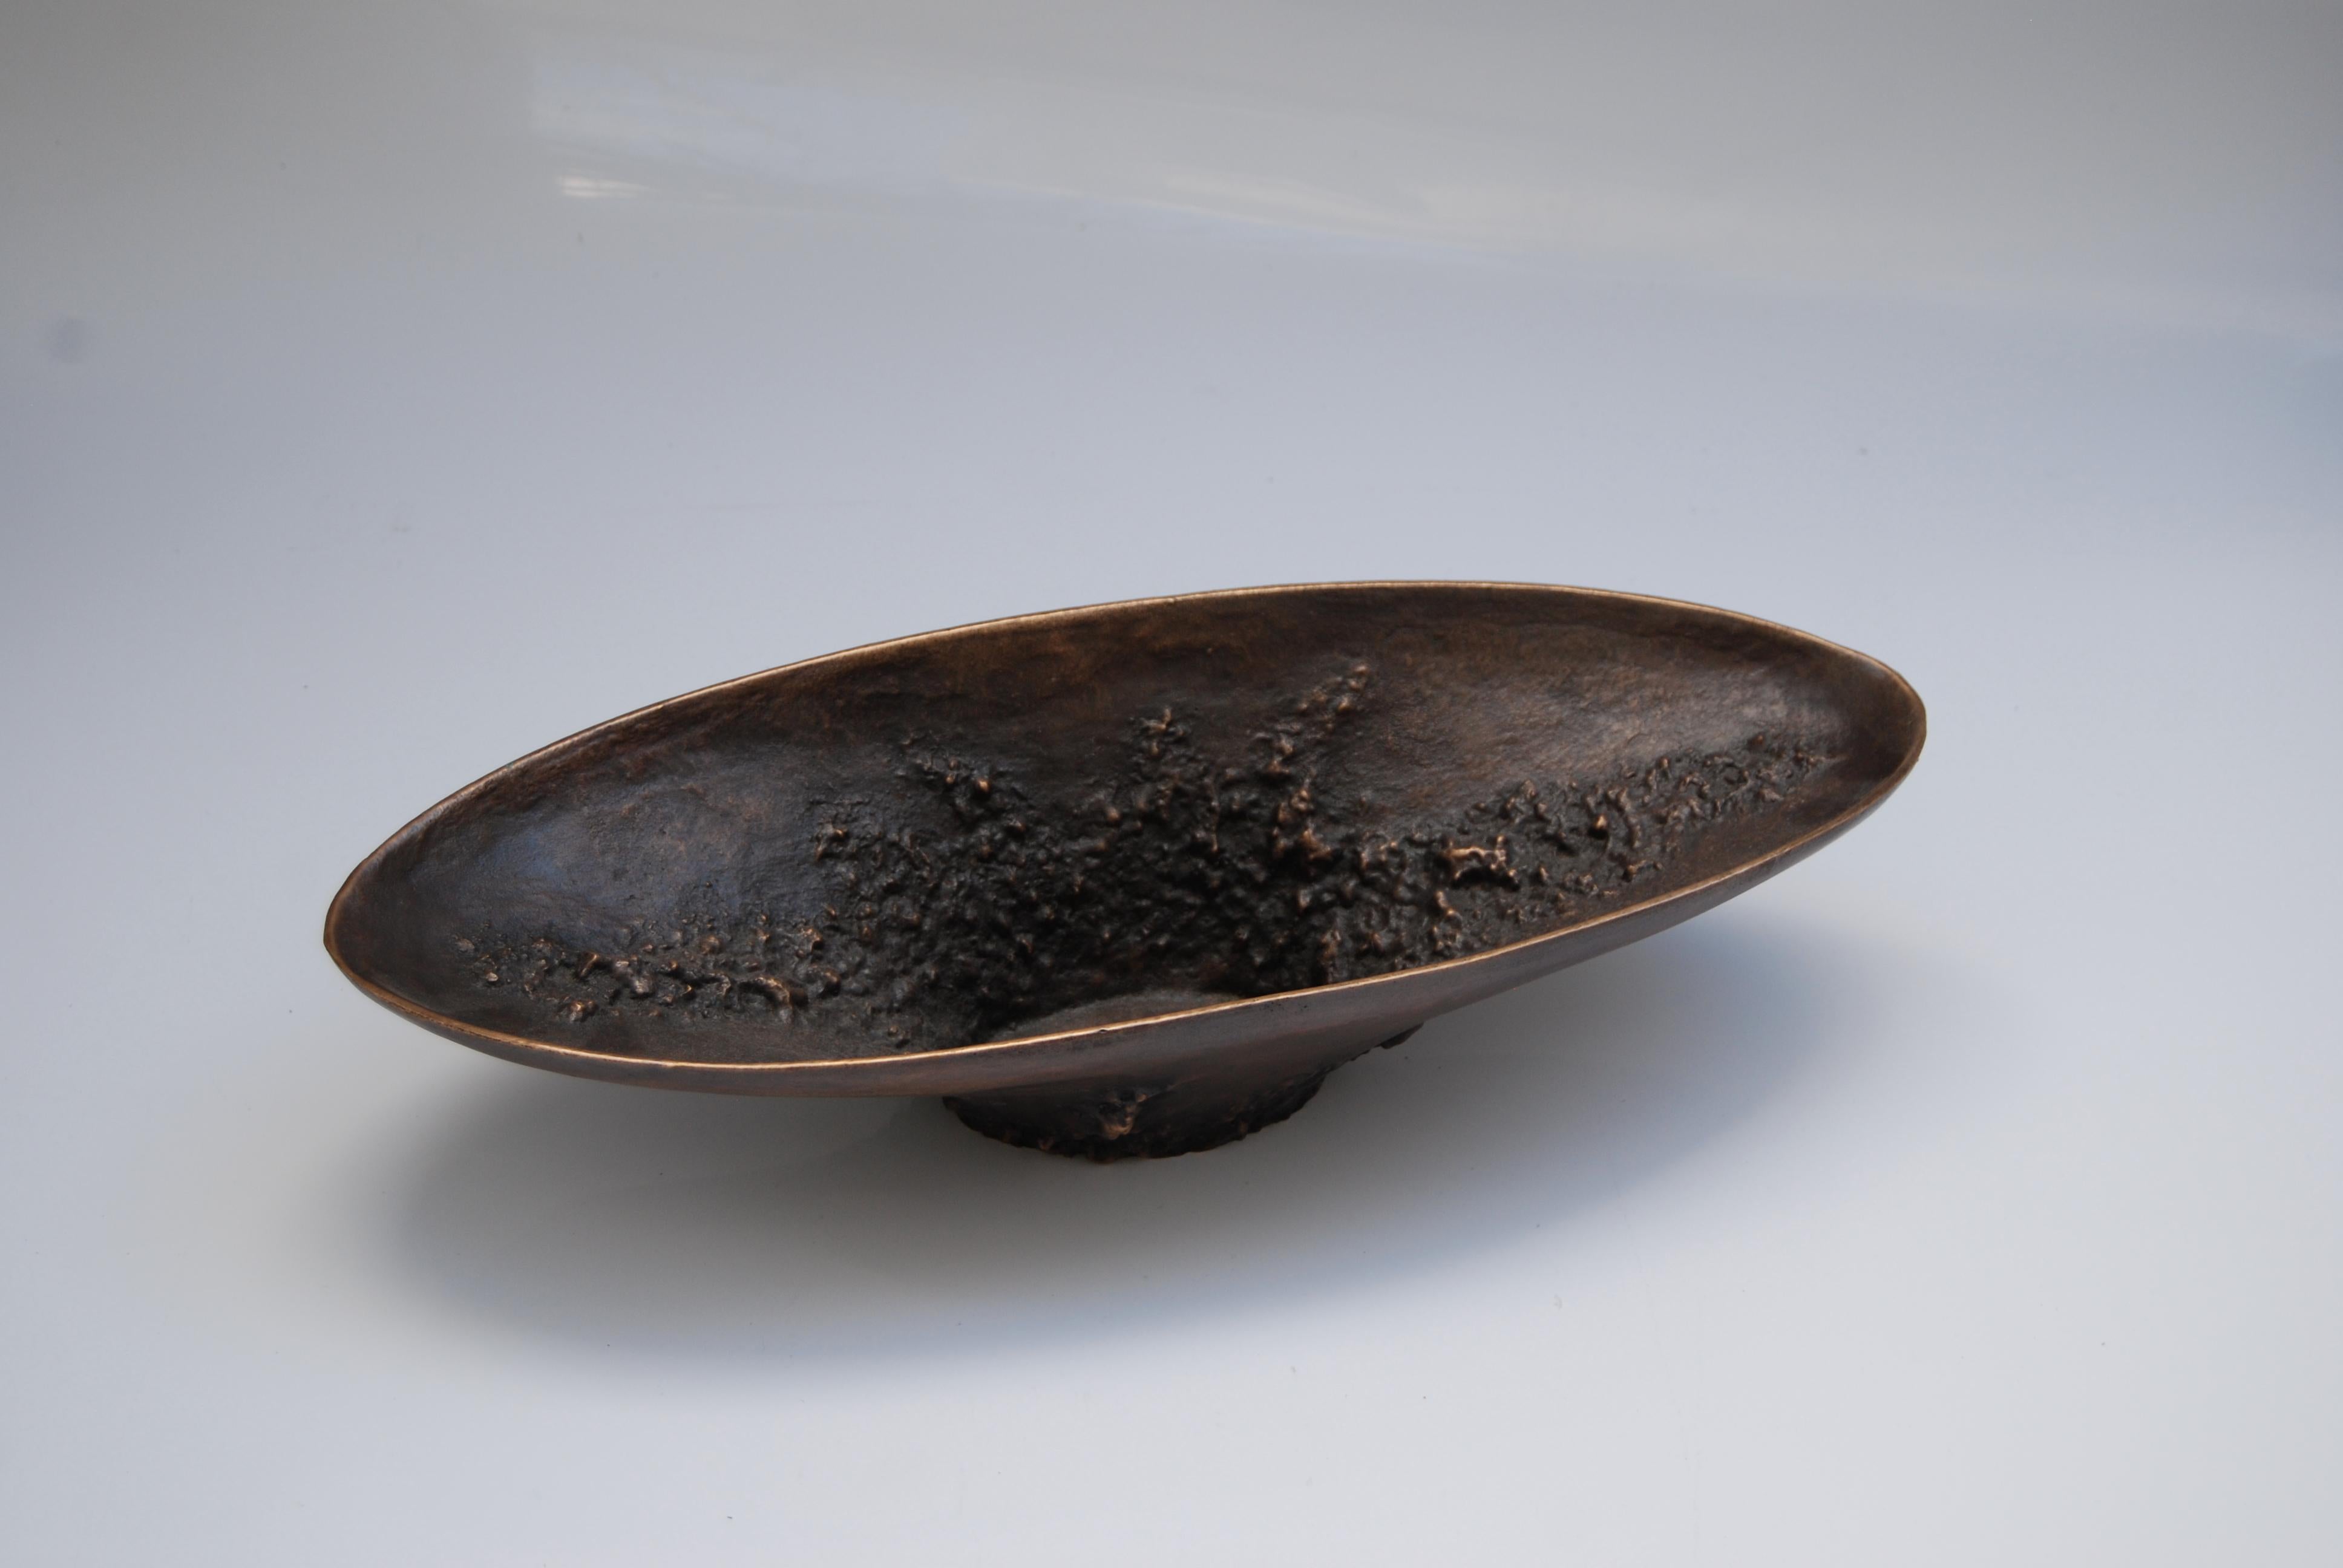 Lange Schale aus dunkler Bronze von Fakasaka Design
Abmessungen: B 41,5 x T 16 x H 9,5 cm
MATERIALIEN: Dunkle Bronze.
 